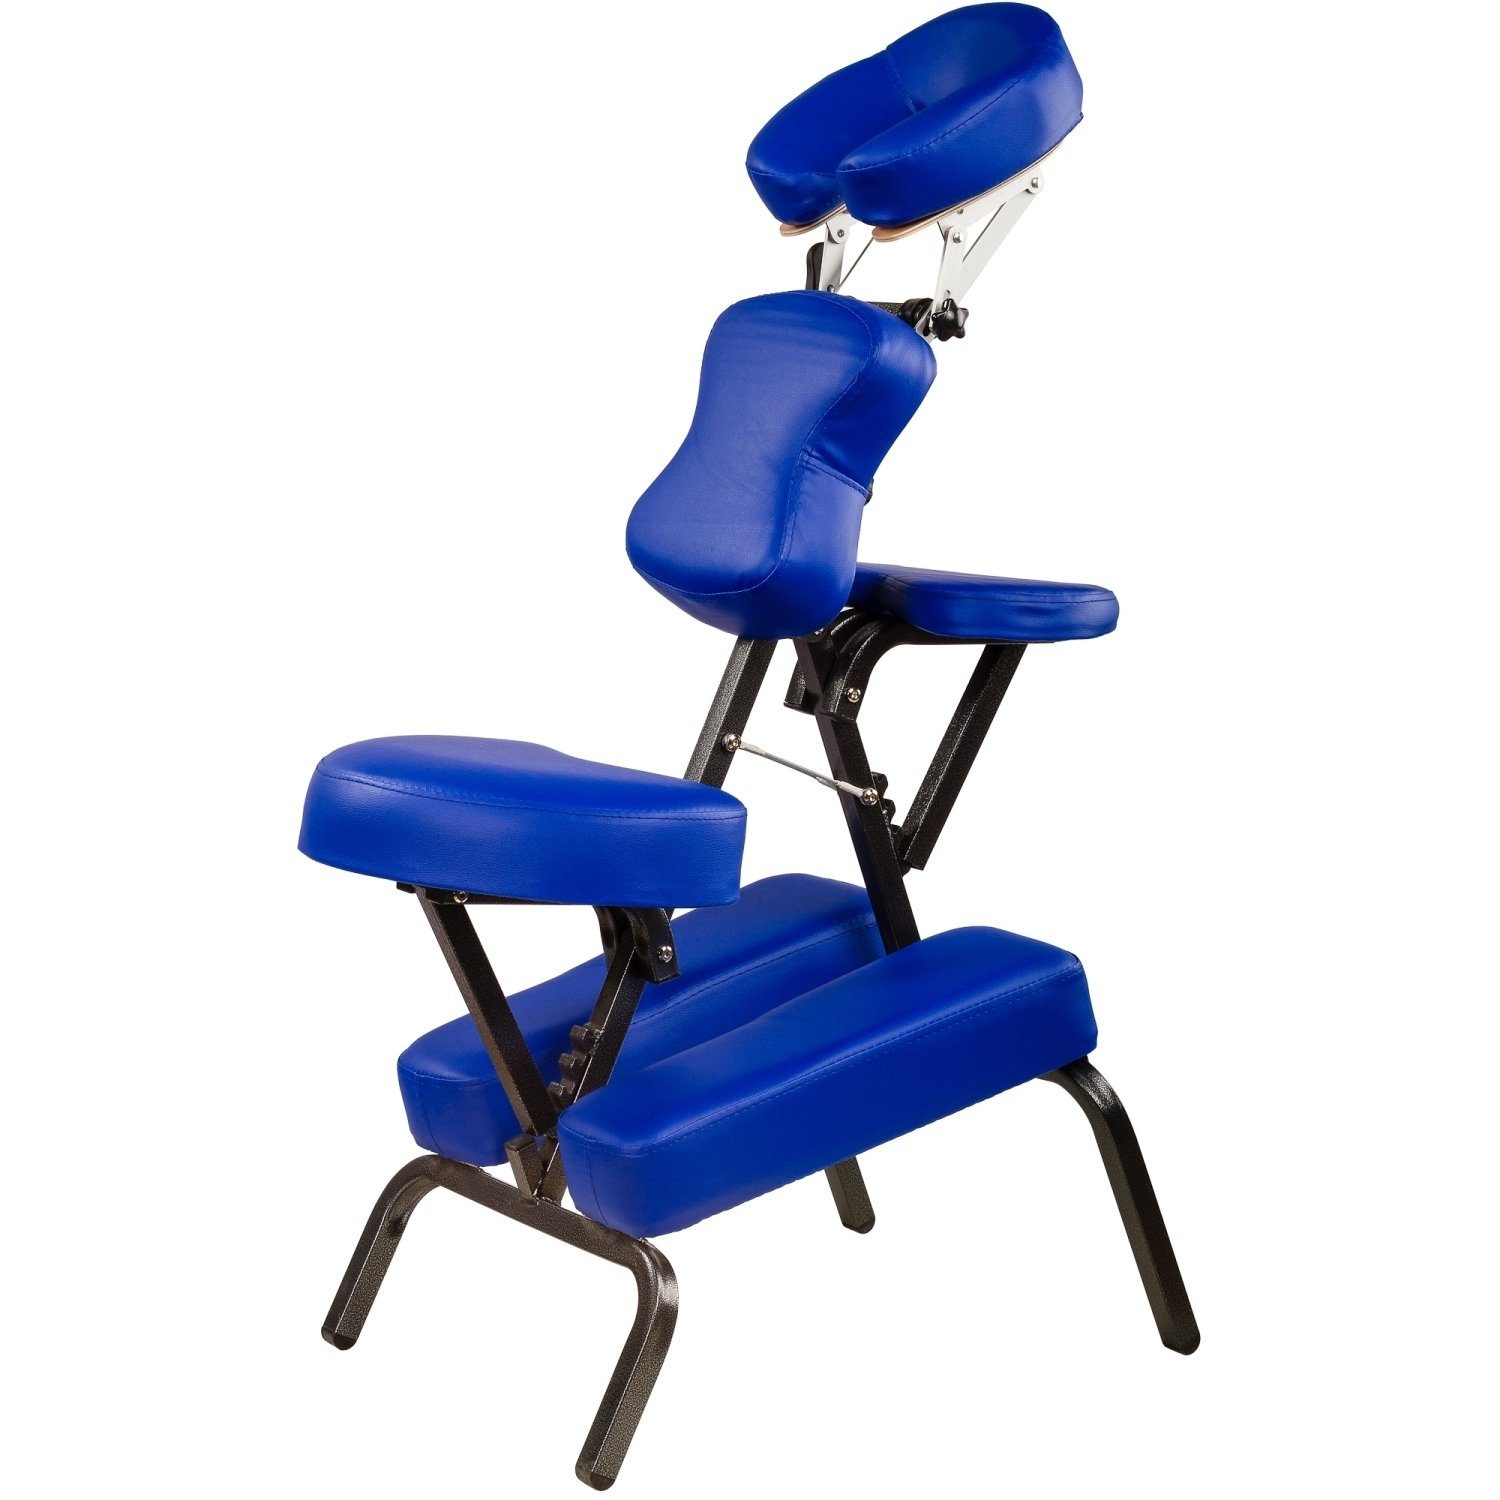 MOVIT Massagesessel Movit® Klappbarer Massagestuhl/Tattoo Stuhl, inkl. Tasche, belastbar bis 200 kg, Farbwahl, schadstoffgeprüft Blau | Massagesessel